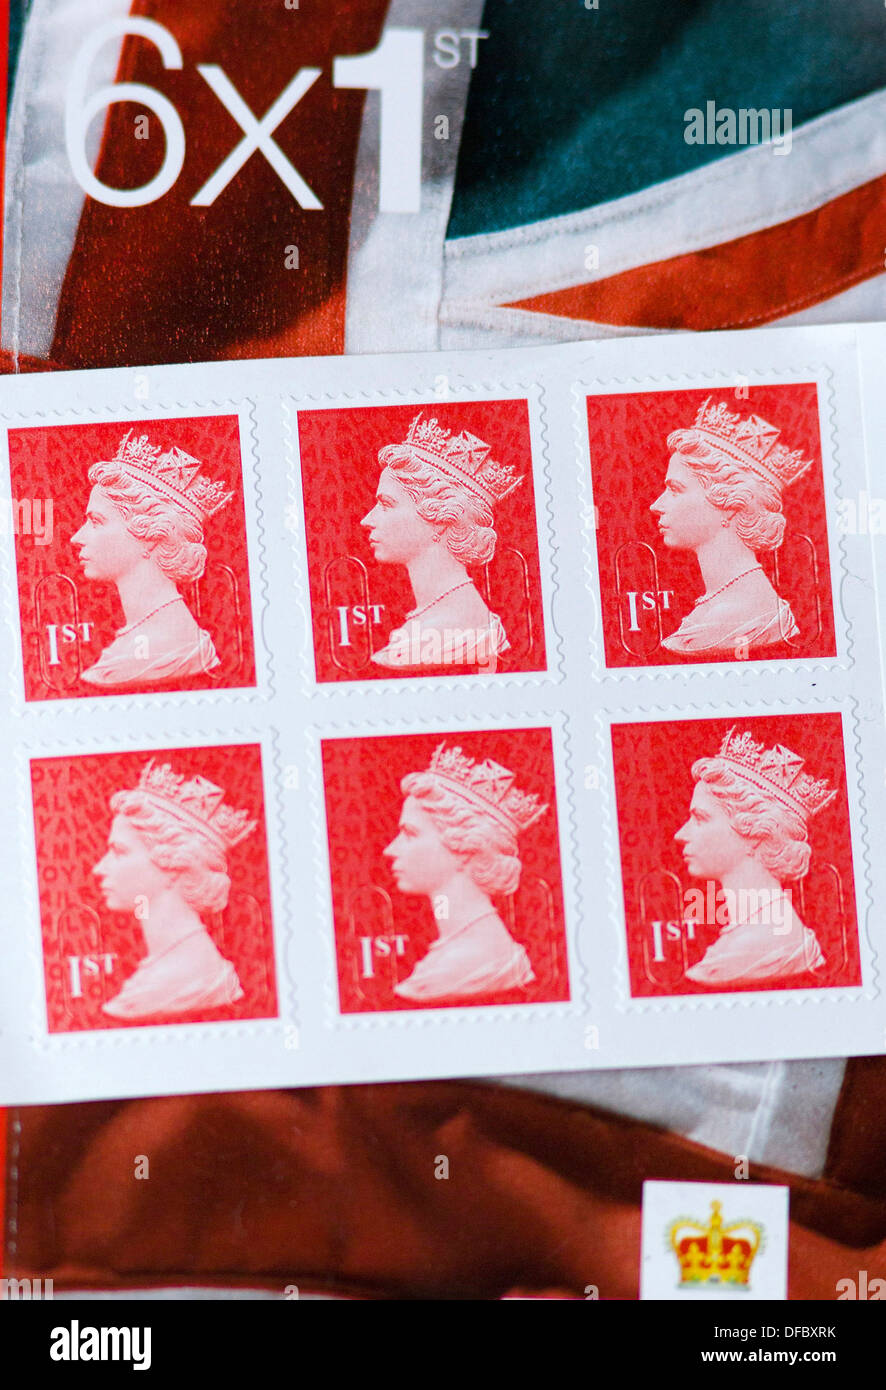 Reino Unido, Londres : una imagen muestra libros de Royal Mail estampillas de primera clase el 12 de septiembre de 2013. Foto de stock